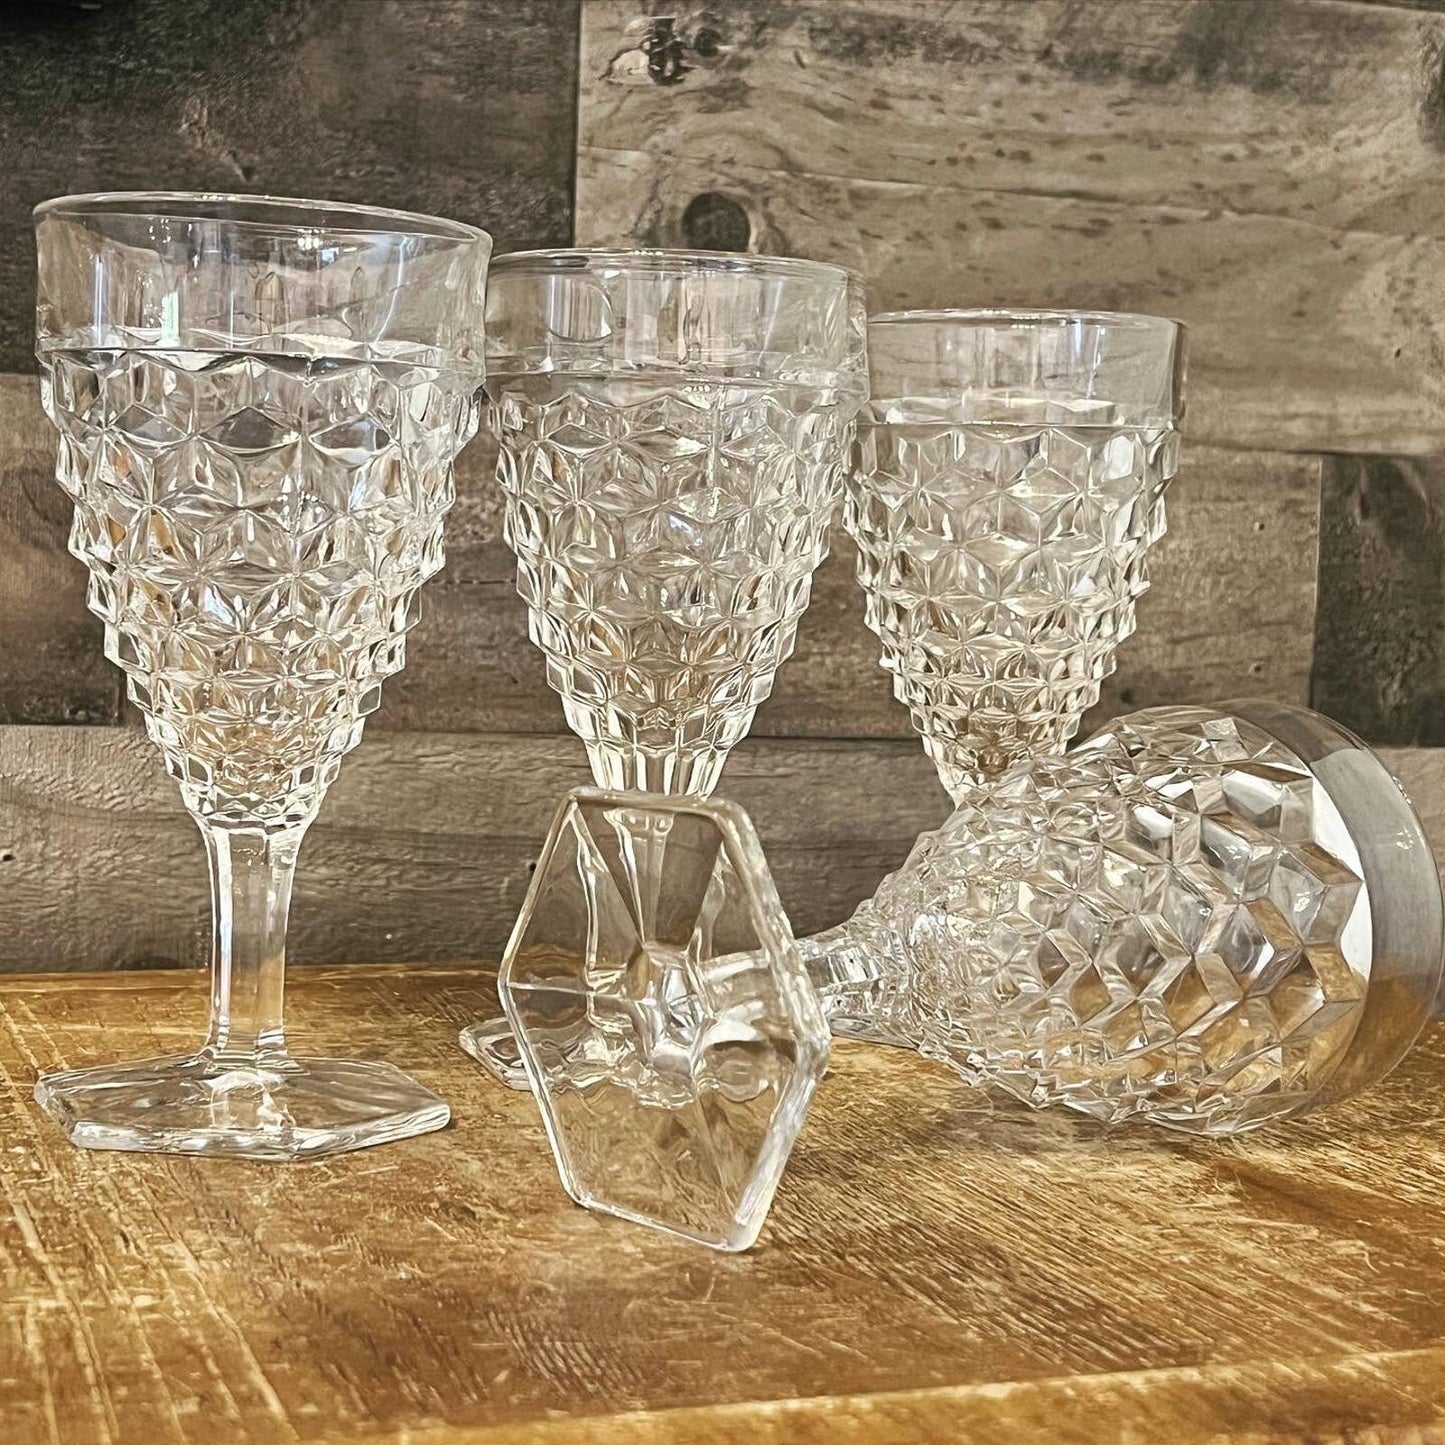 Set of 4 Fostoria American Clear glass water goblets - vintage glasses - bar glasses - cocktail glasses - bar cart glasses - stem 2056